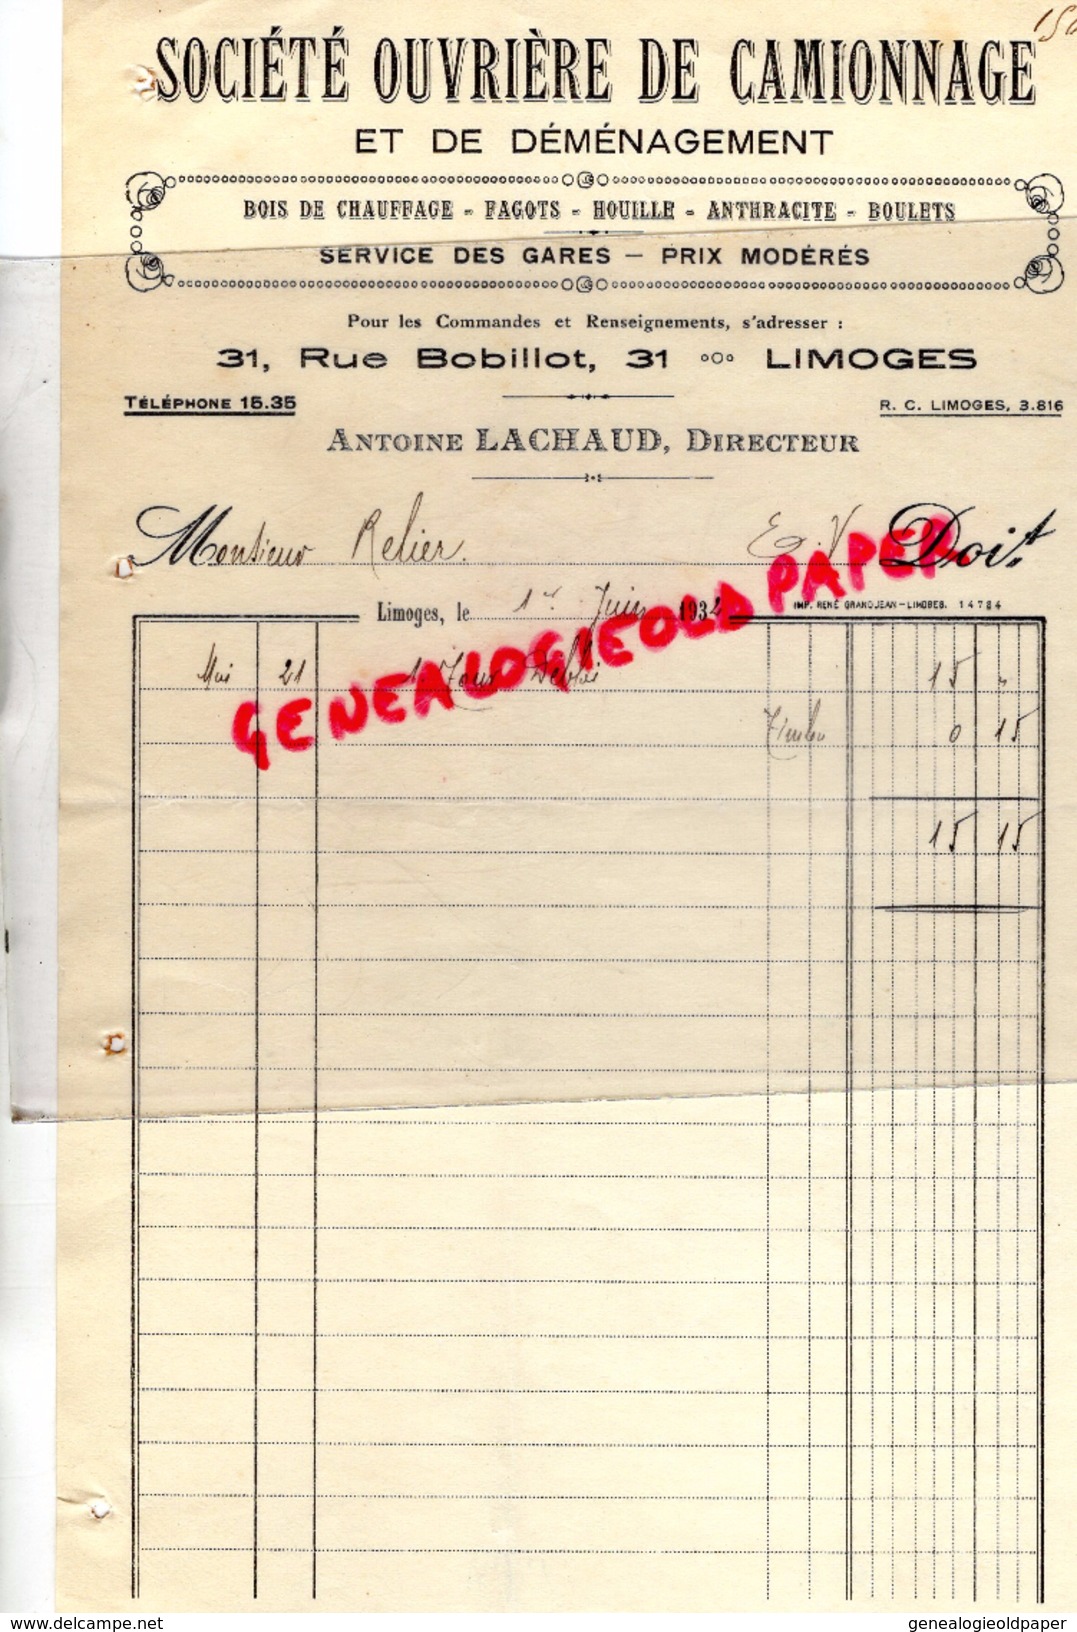 87 - LIMOGES - FACTURE SOCIETE OUVRIERE CAMIONNAGE DEMENAGEMENT- 31 RUE BOBILLOT- ANTOINE LACHAUD- 1932 - Verkehr & Transport